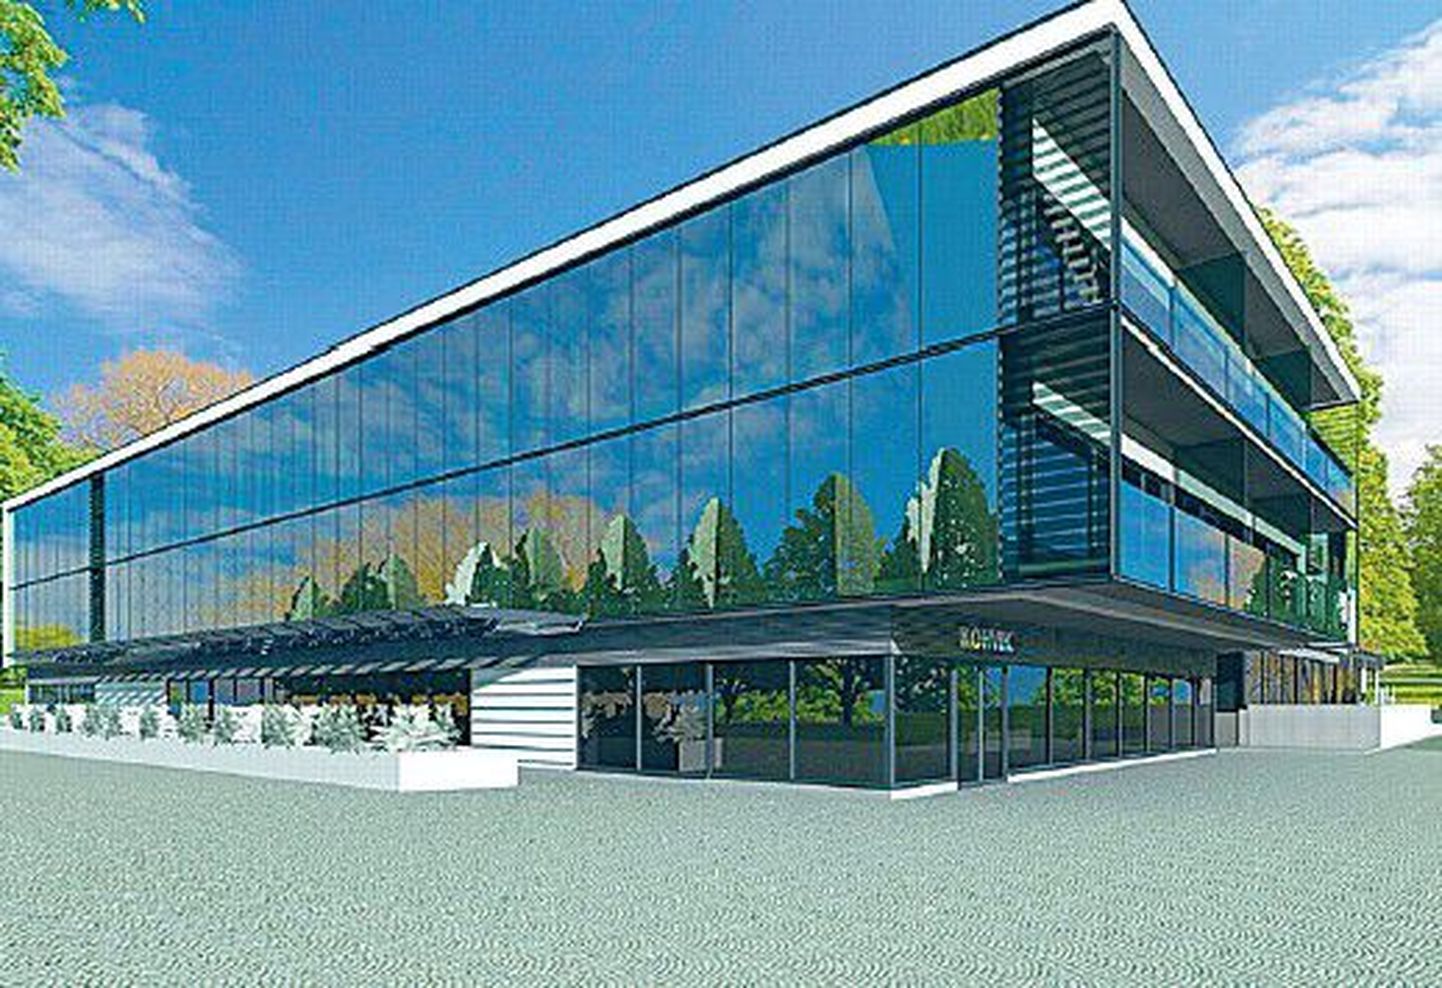 Так будет выглядеть новое здание «Черного лебедя» в июне следующего года. Здание спроектировал Энн Раясаар из фирмы JVR Arhitektuuribüroo.